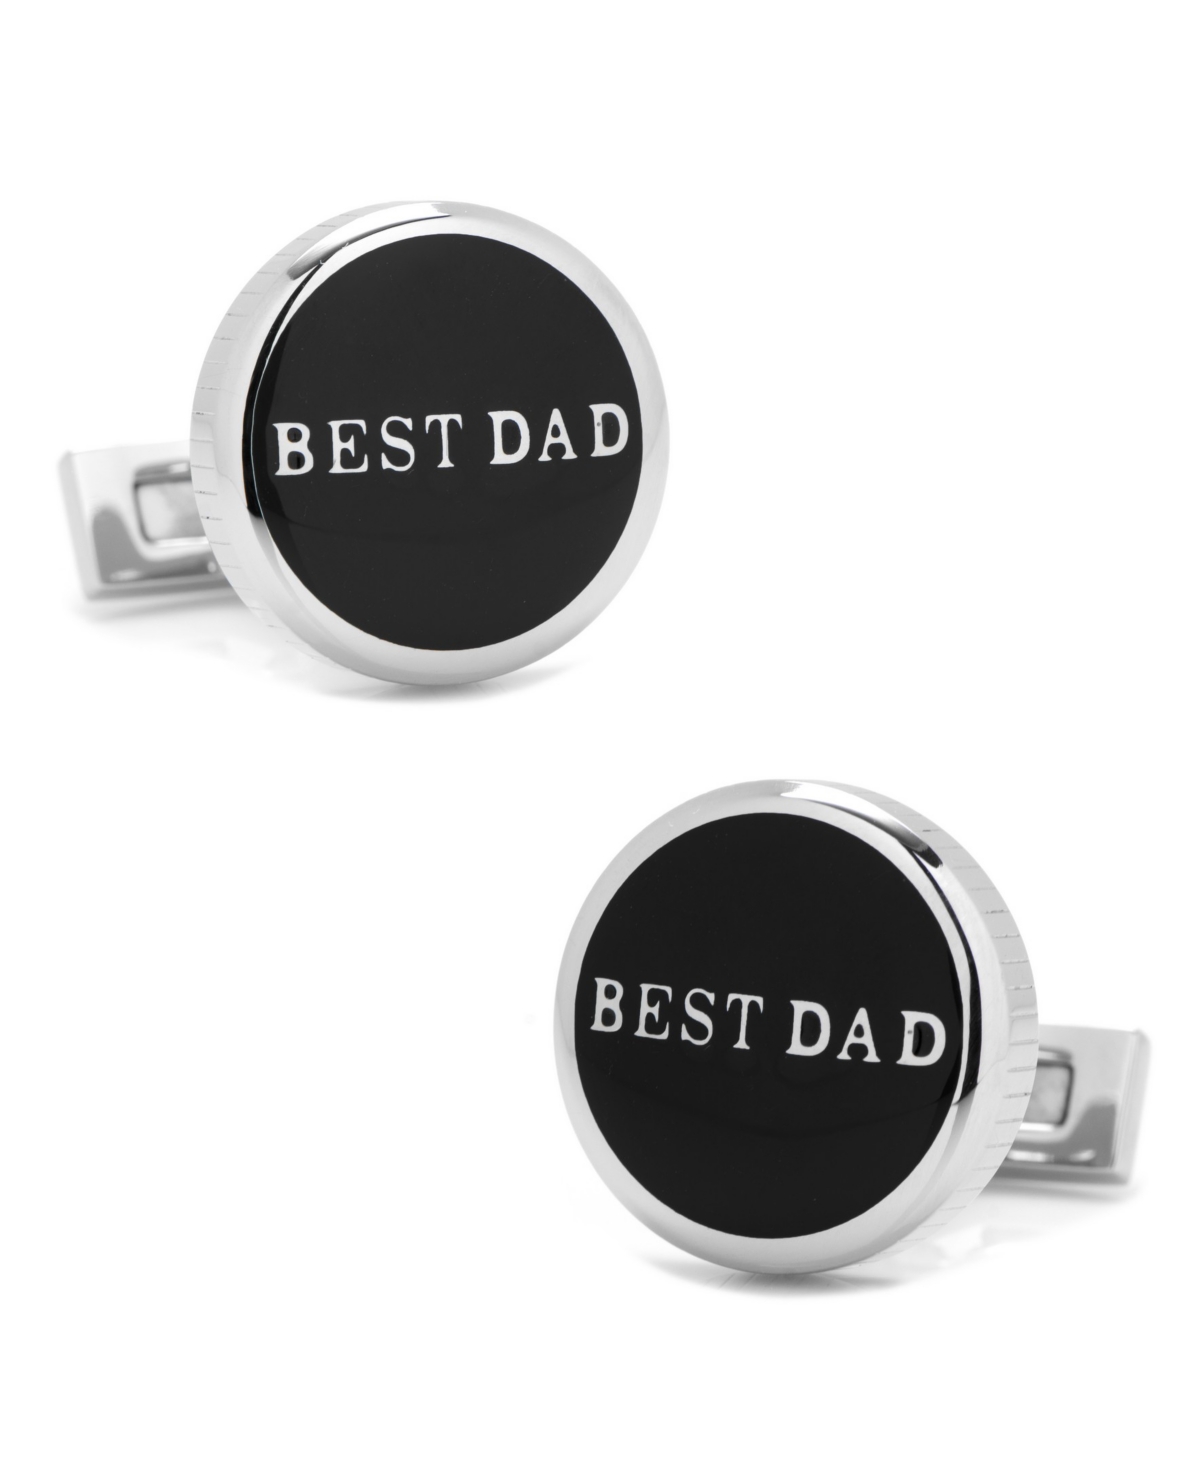 Best Dad Stainless Steel Cufflinks - Black